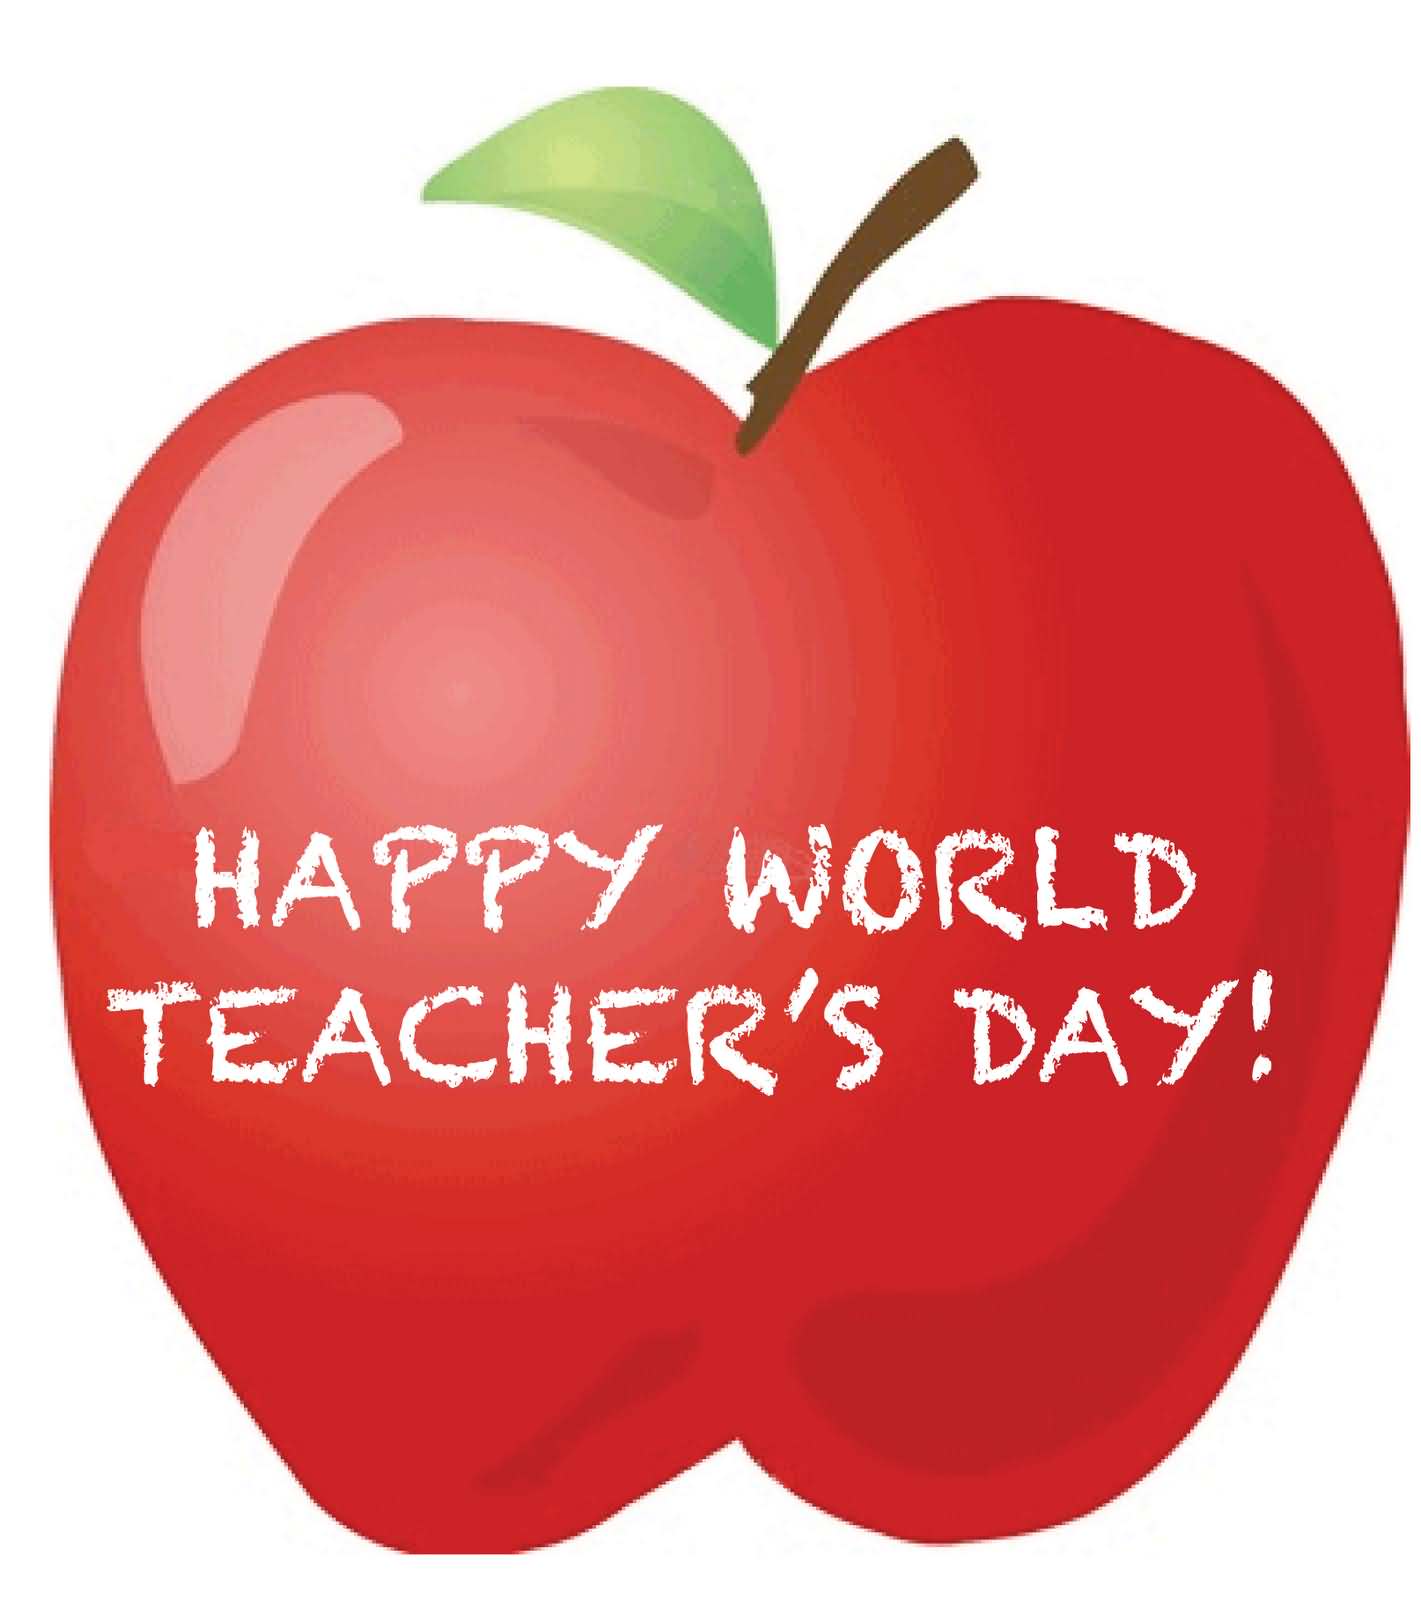 Happy World Teachers' Day Written on Apple Clipart